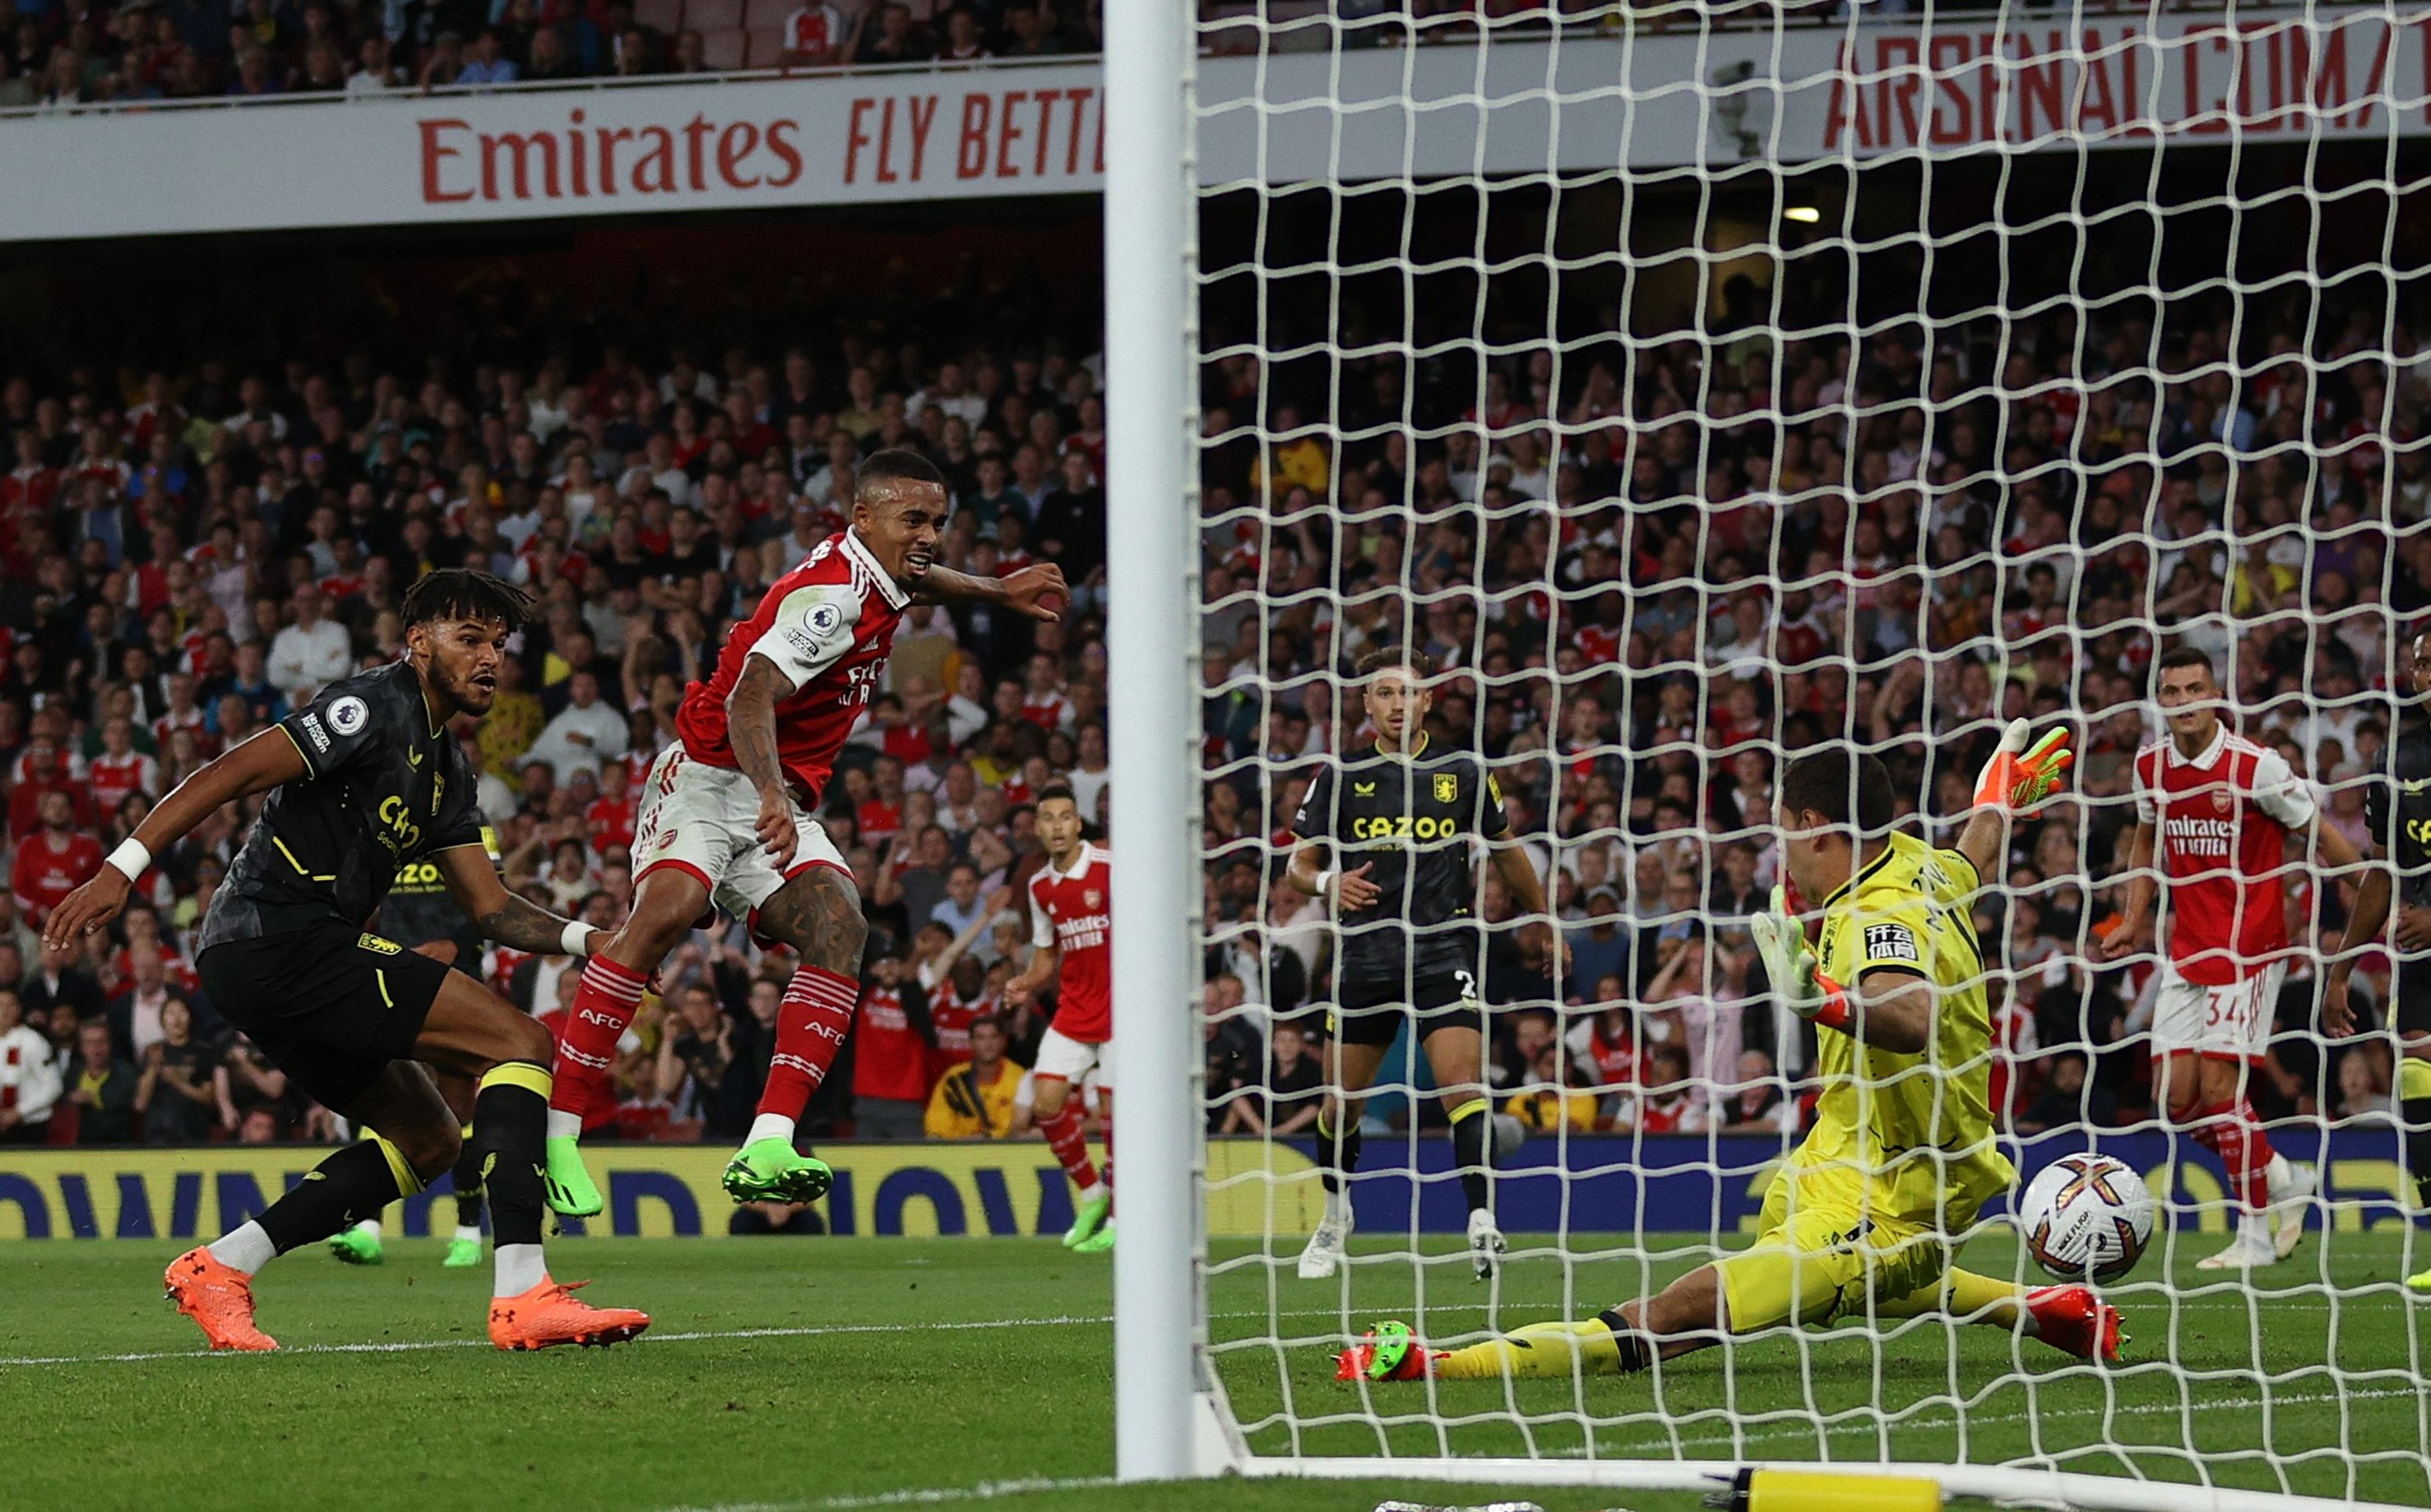 Arsenal vs Aston Villa: Match highlights